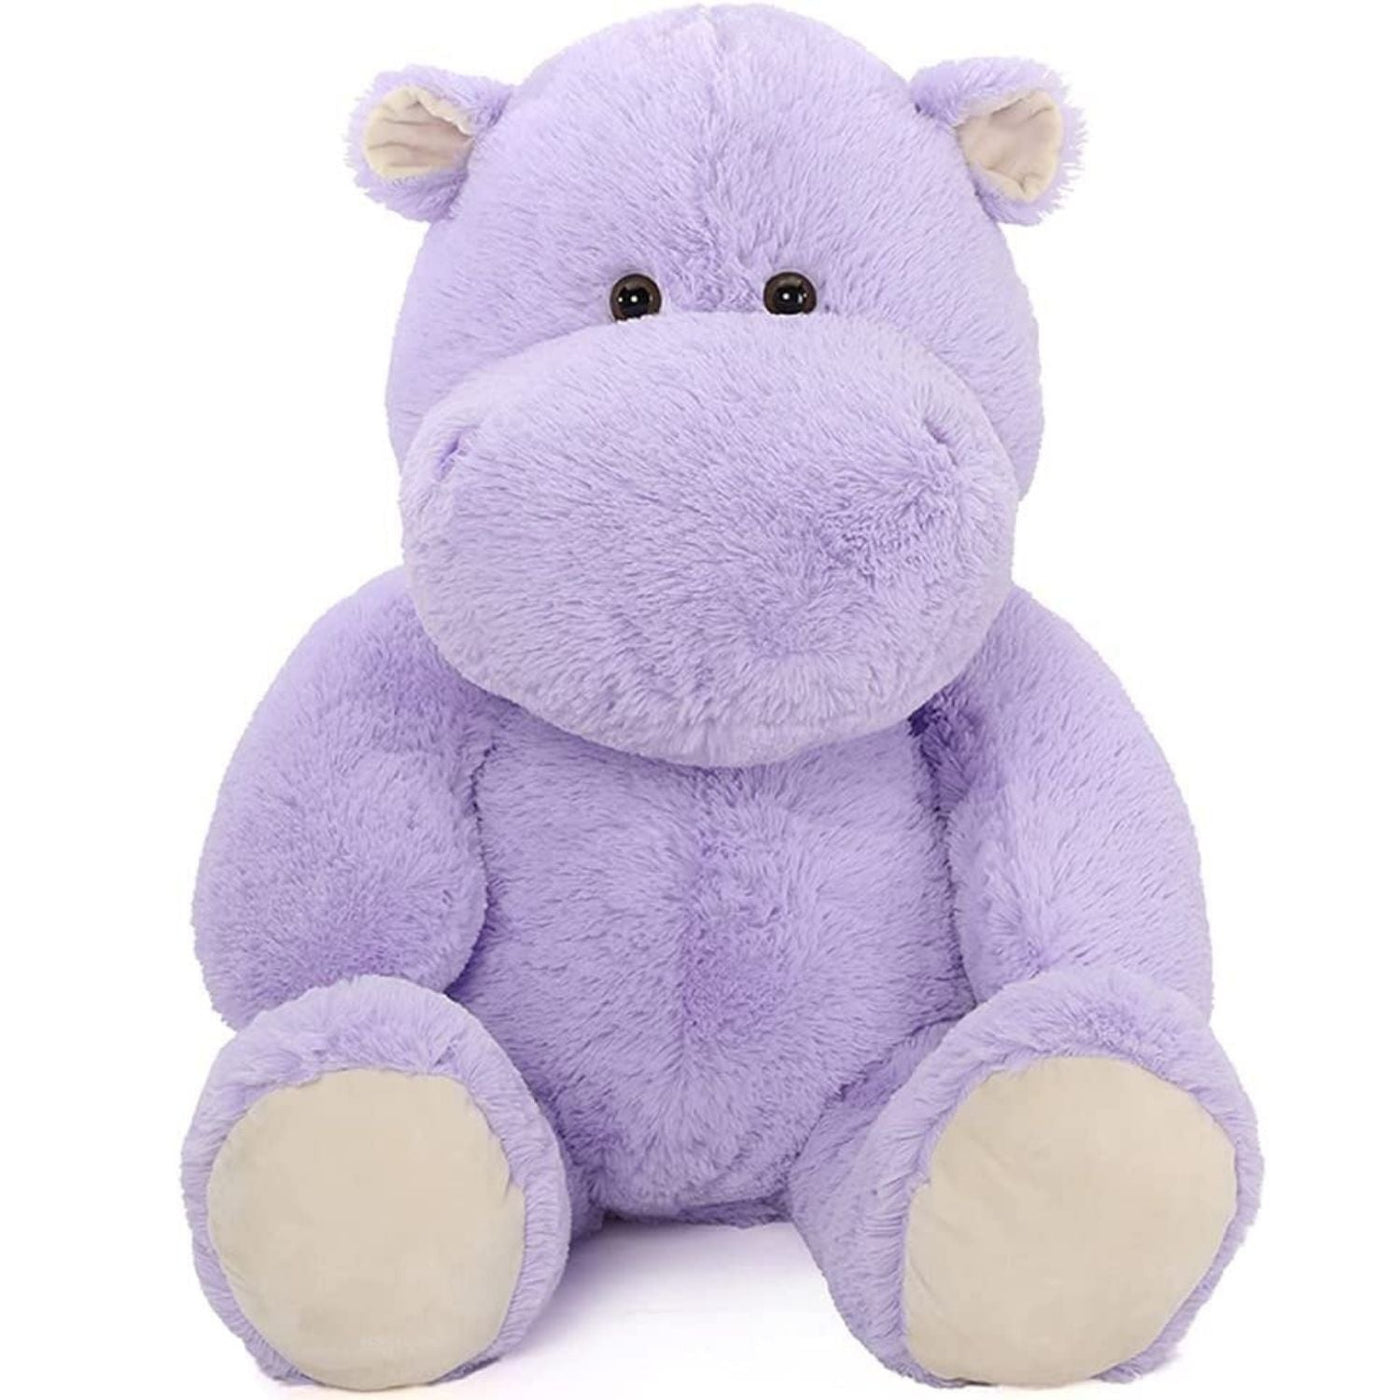 Giant Hippopotamus Stuffed Toy, Purple, 36 Inches - MorisMos Plush Toys Online